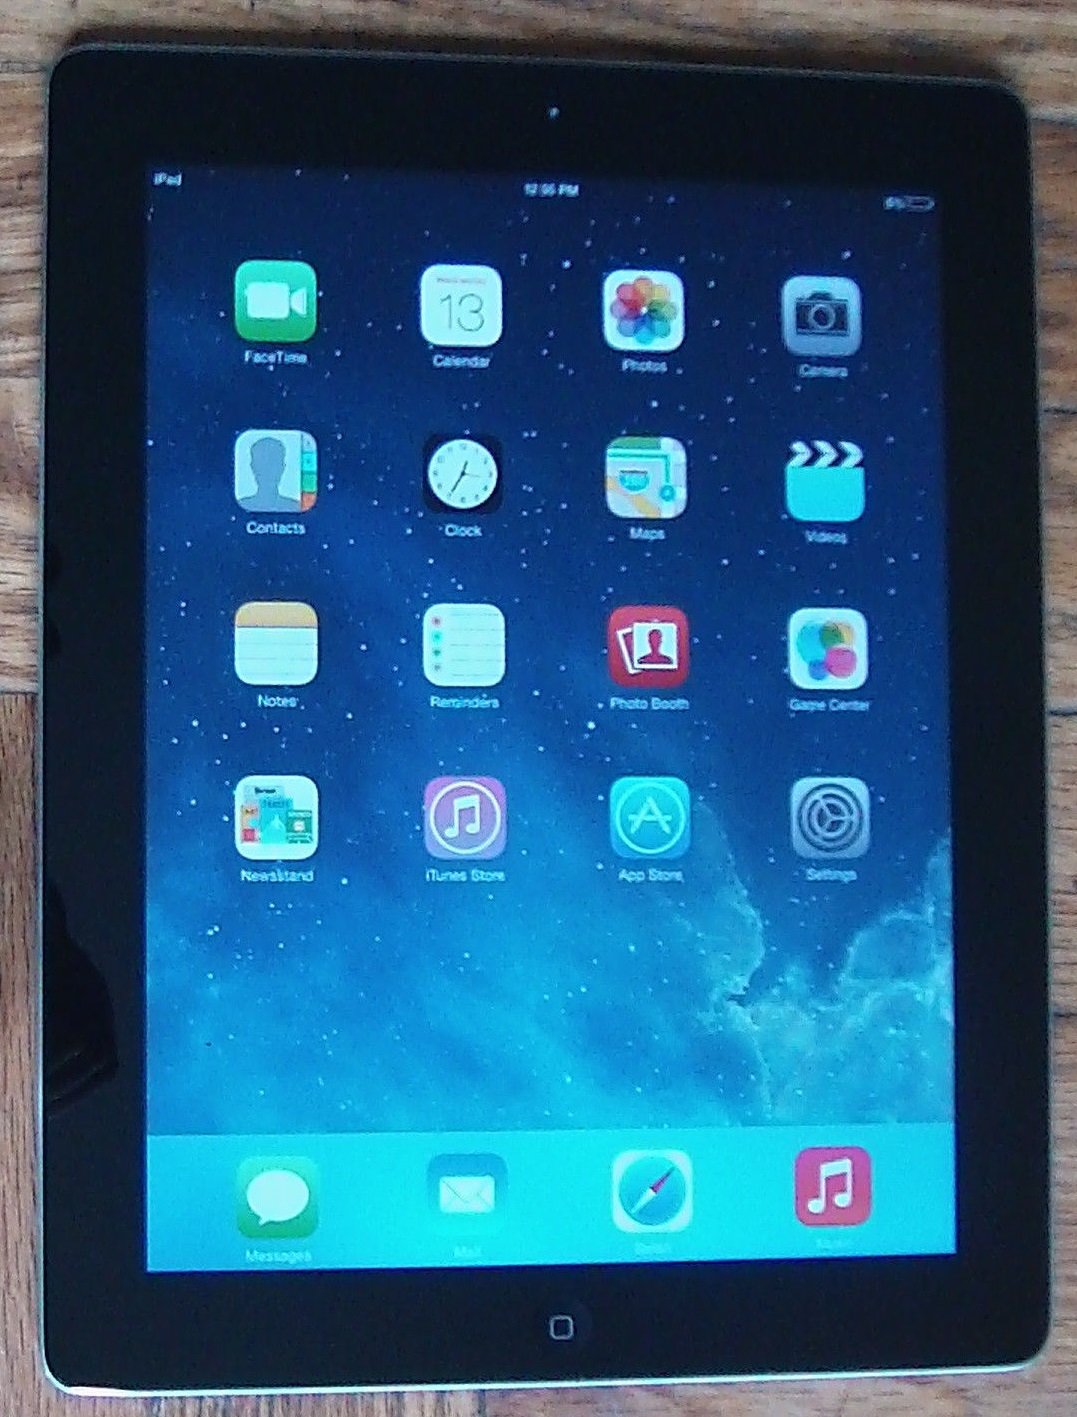 Apple iPad 2 16GB Wi-Fi + 3G Cellular AT&T A1396 Black Tablet MD65LL/A